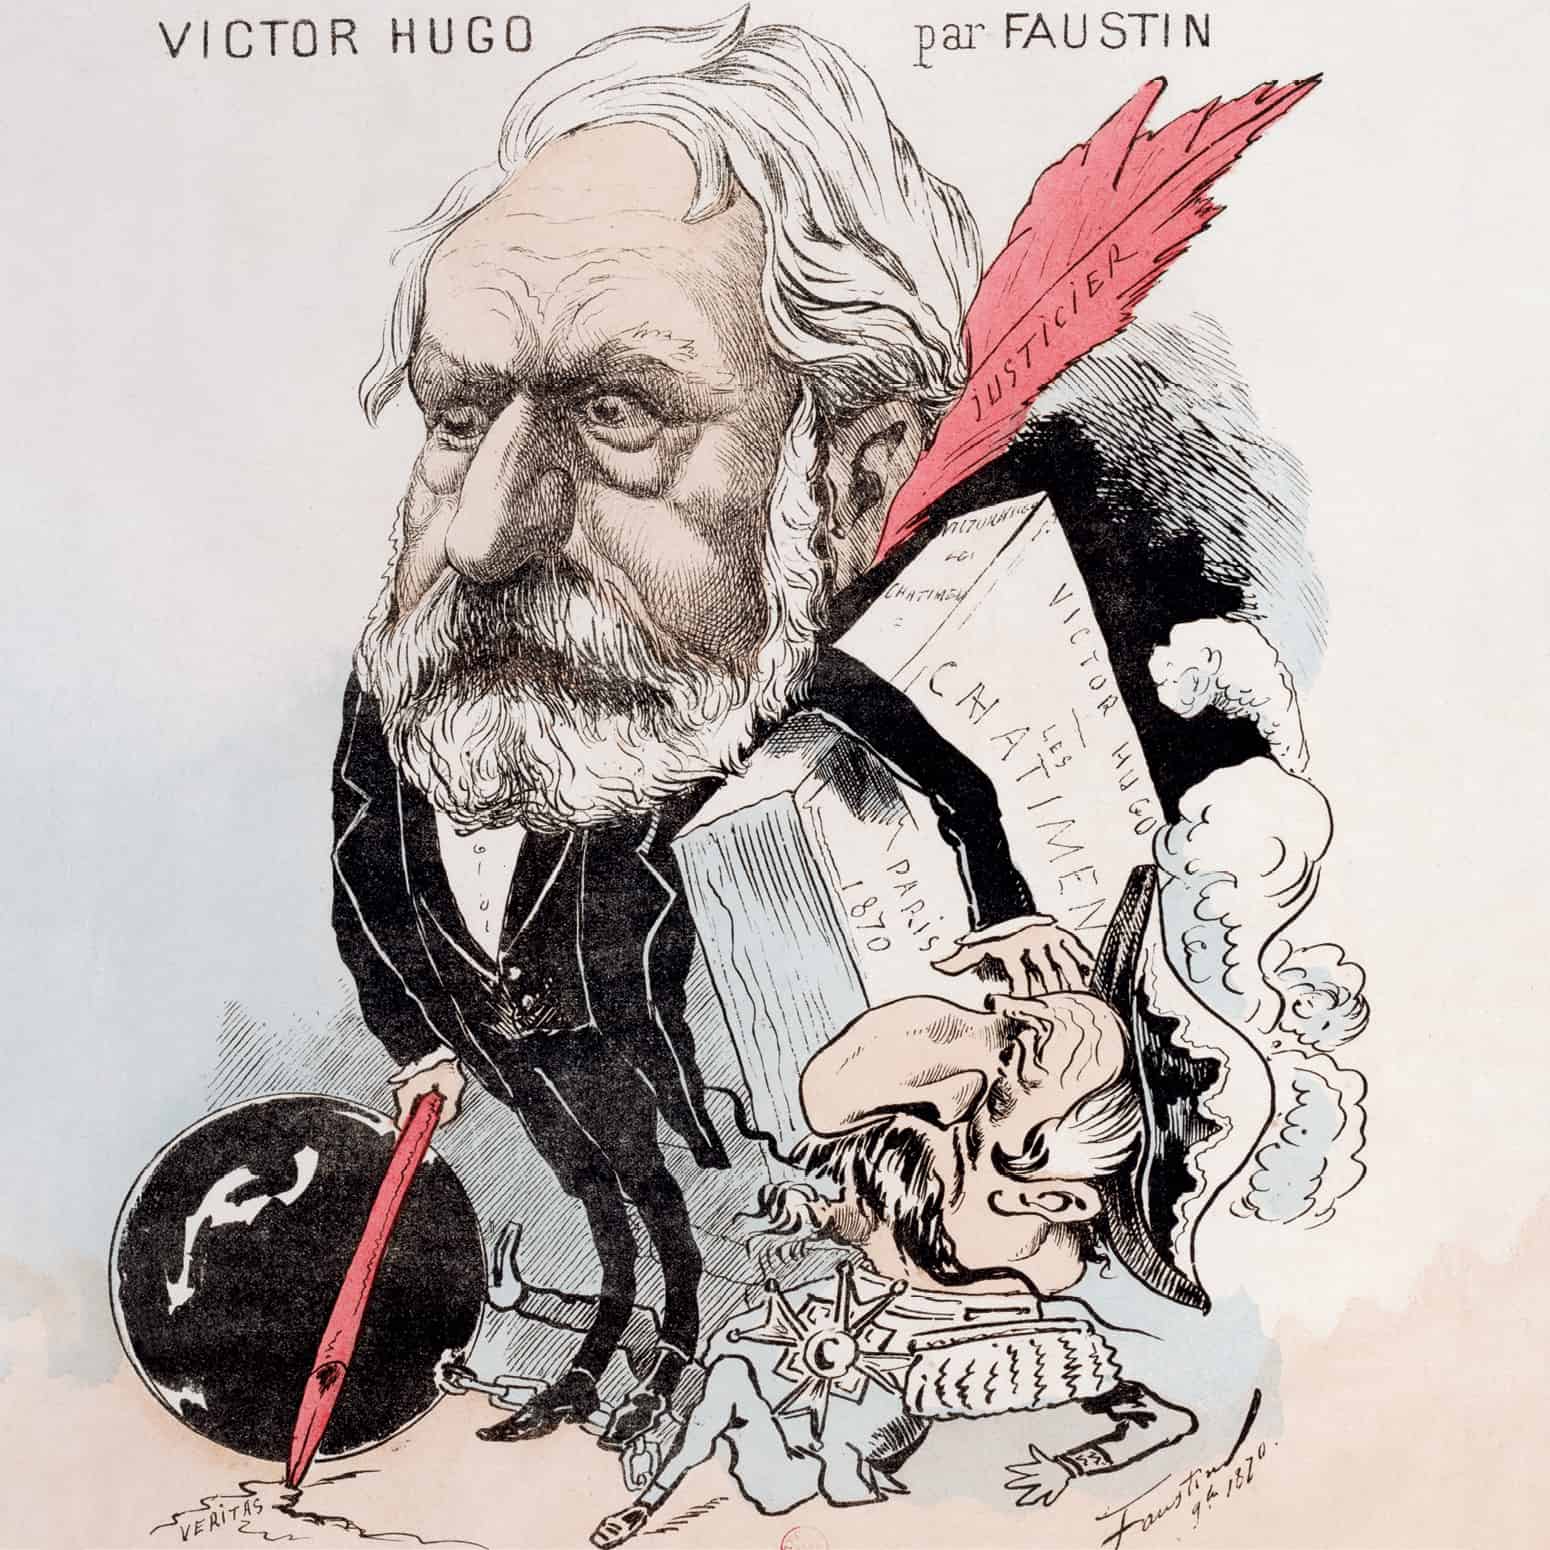 Victor Hugo par Faustin. Cette image met en scène le retour triomphant de Victor Hugo en France en 1870, après près de dix-neuf ans d'exil.